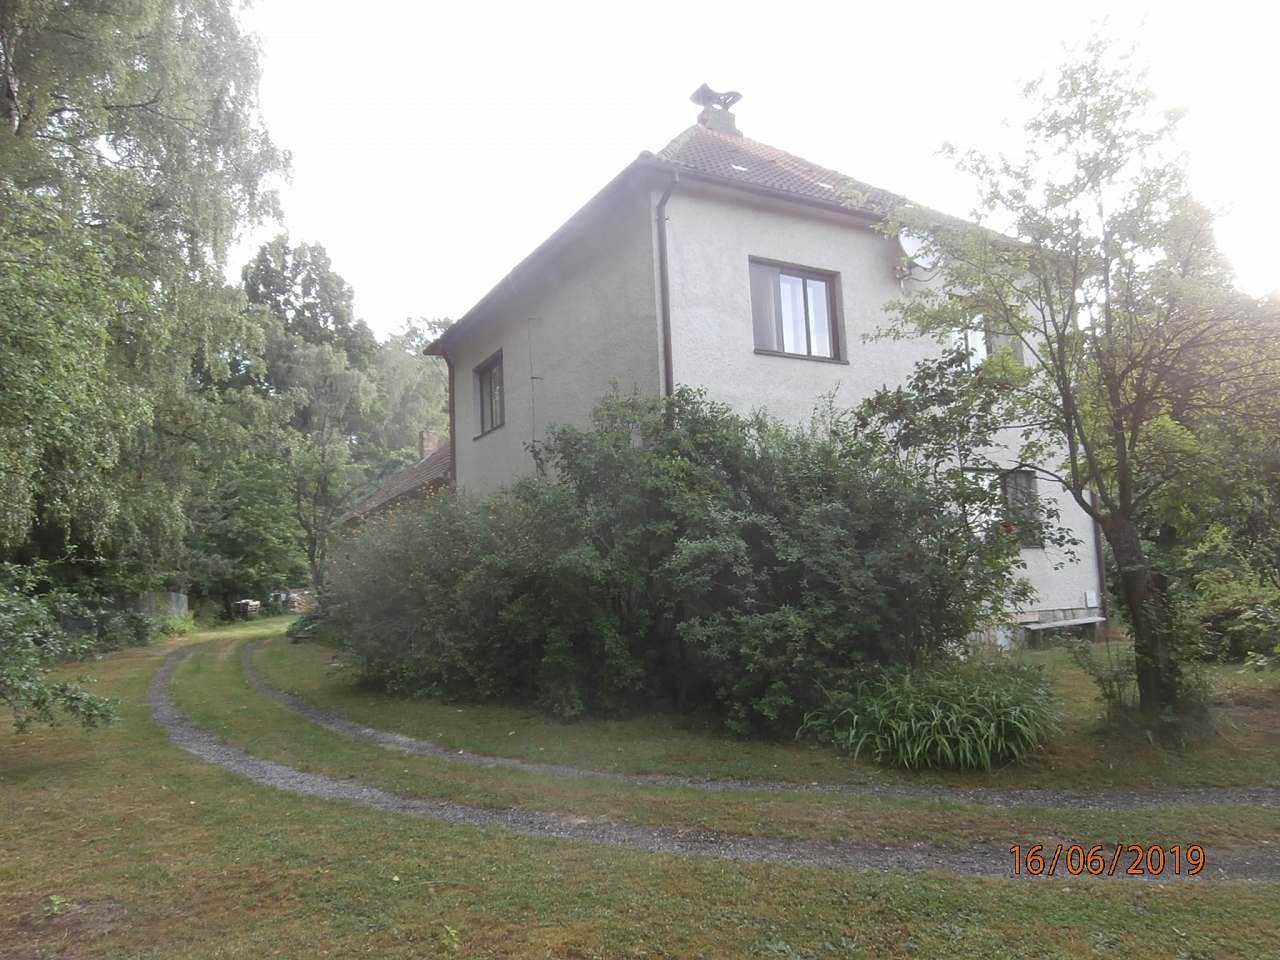 Ferienhaus Hluboká in der Nähe von Bor. 2